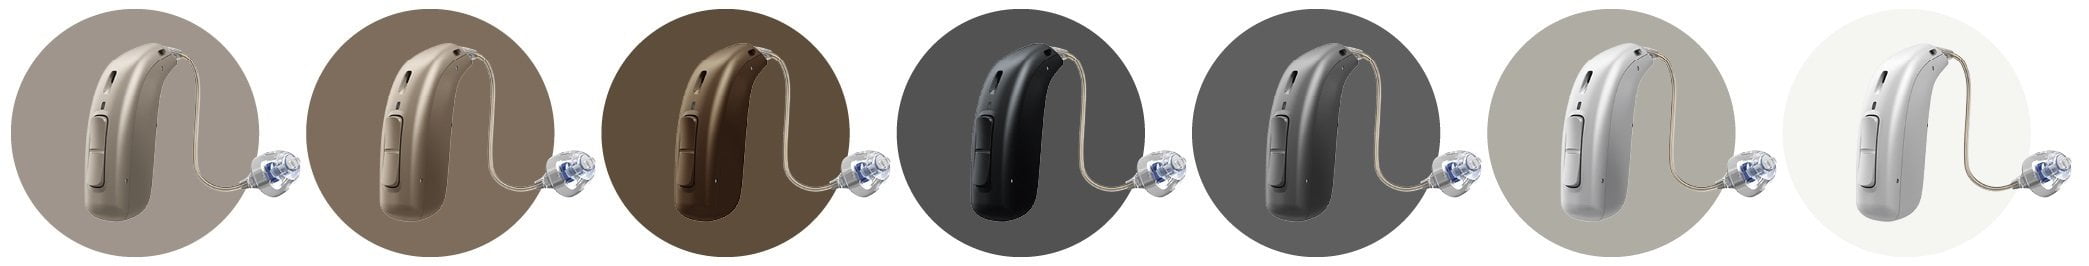 オープンS耳かけ型プラスパワーカラーバリエーション